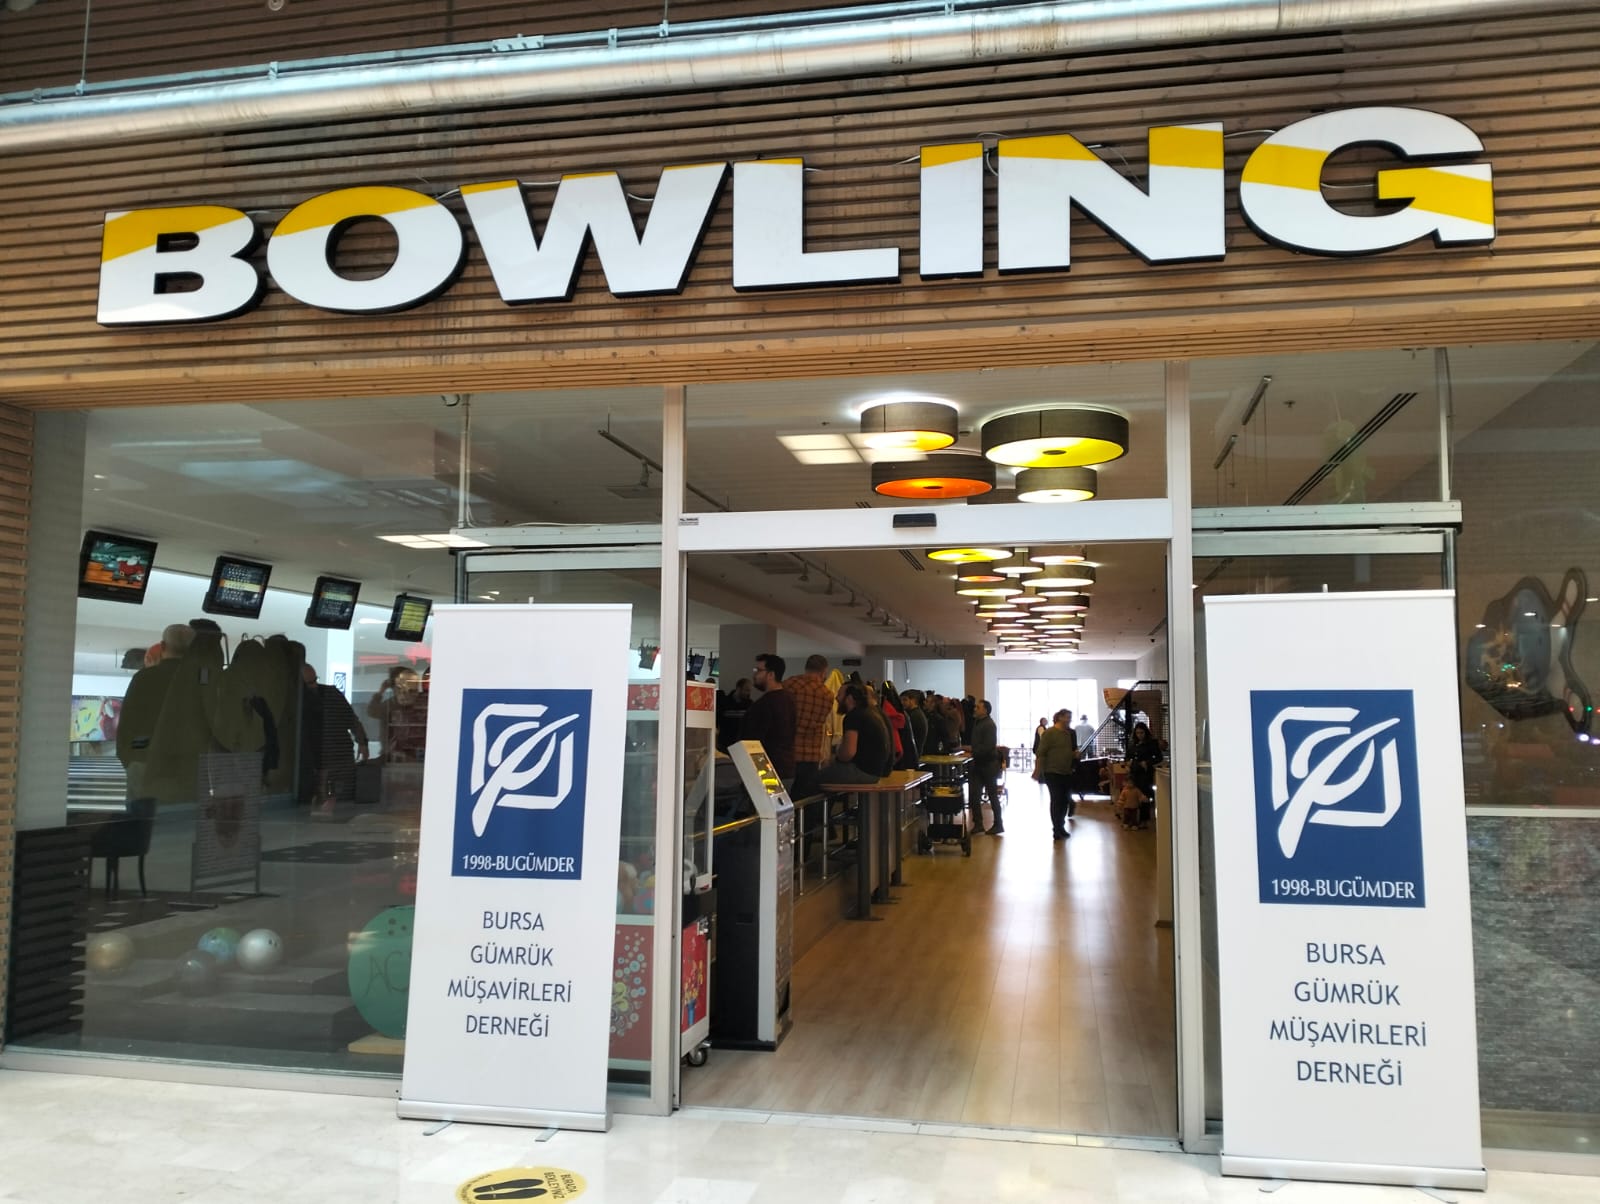 BUGÜMDER 12. Geleneksel Bowling Turnuvası 29 Ocak 2023 tarihinde gerçekleştirildi...